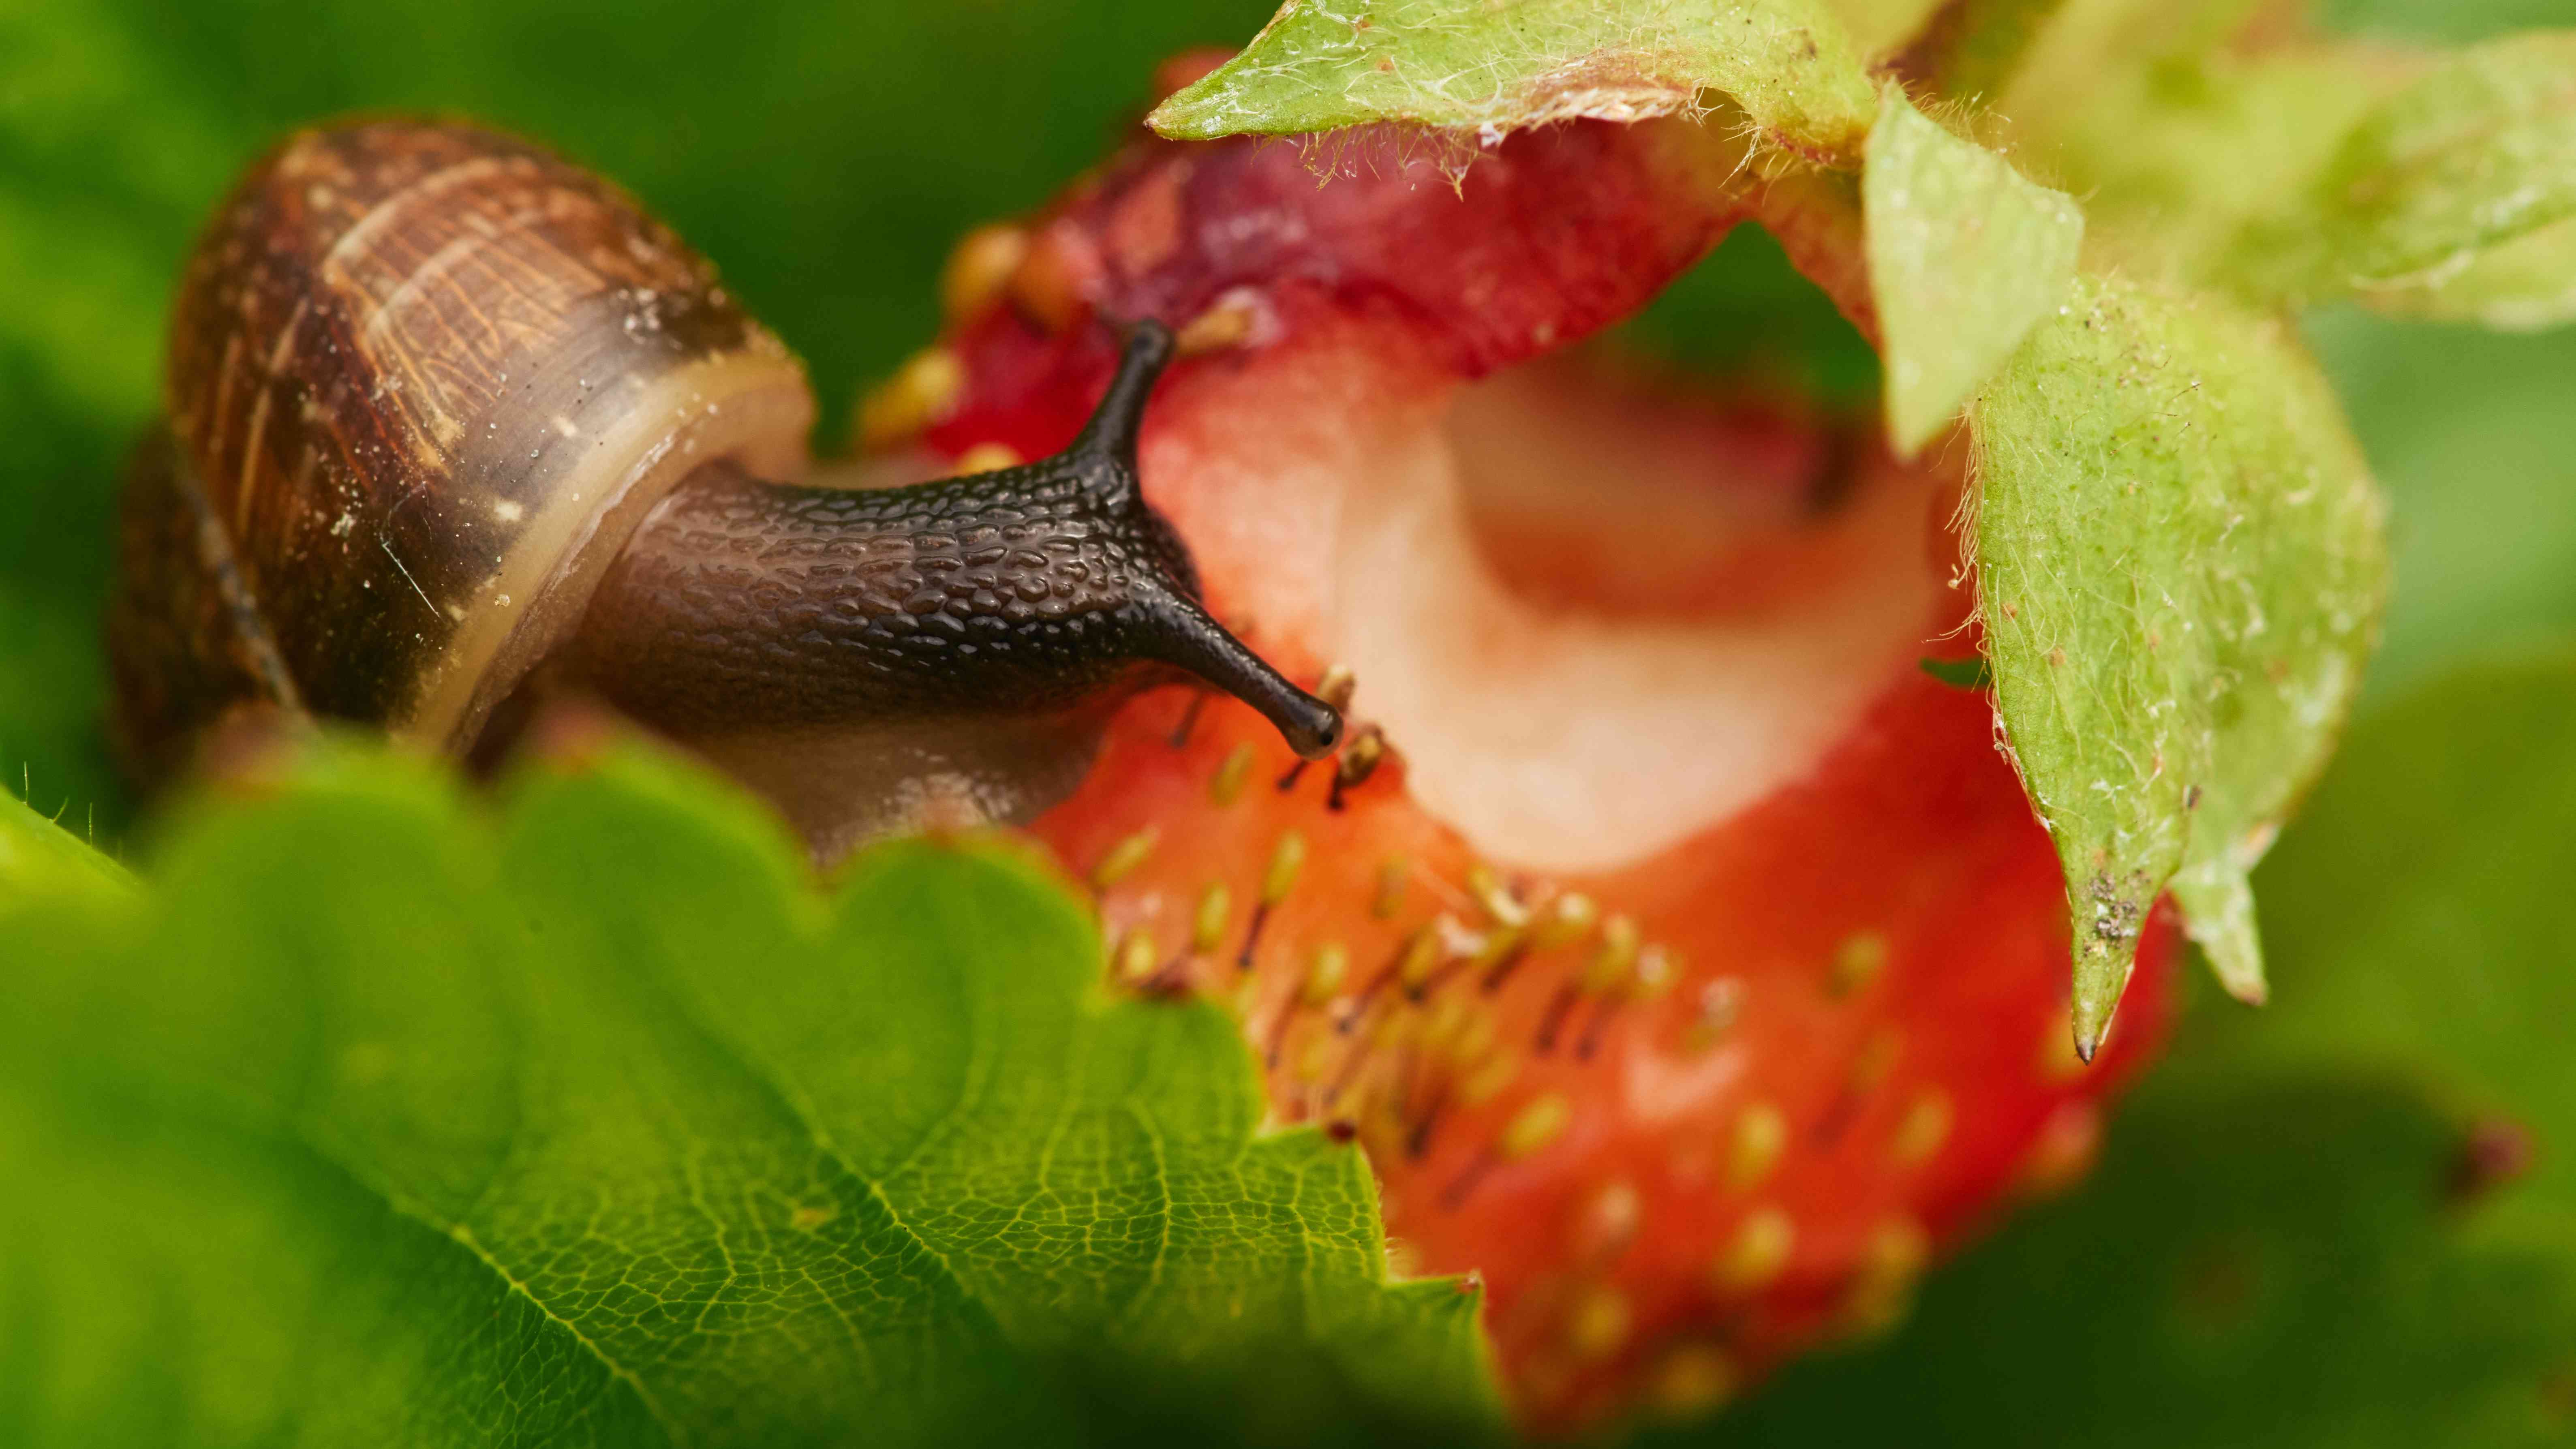 一只葡萄蜗牛在吃草莓，在一个大的成熟的鲜红色草莓上爬来爬去，破坏了收成，这是一张色彩鲜艳的照片，有选择性的景深，